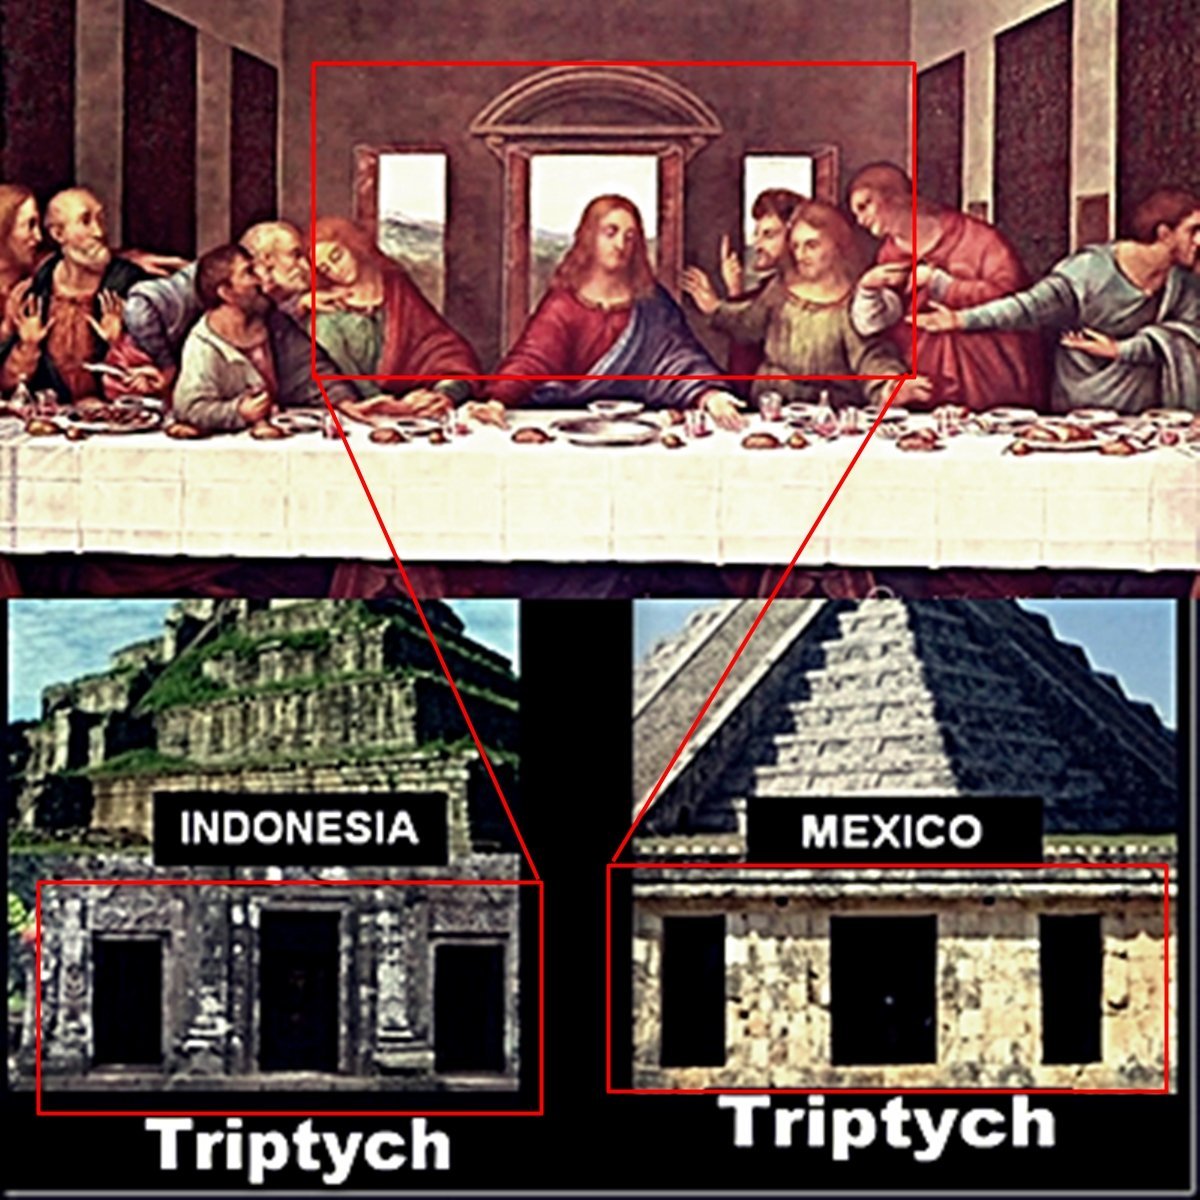 Pirámides del mundo. Similitudes extremas entre ellas. ¿Simple coincidencia?